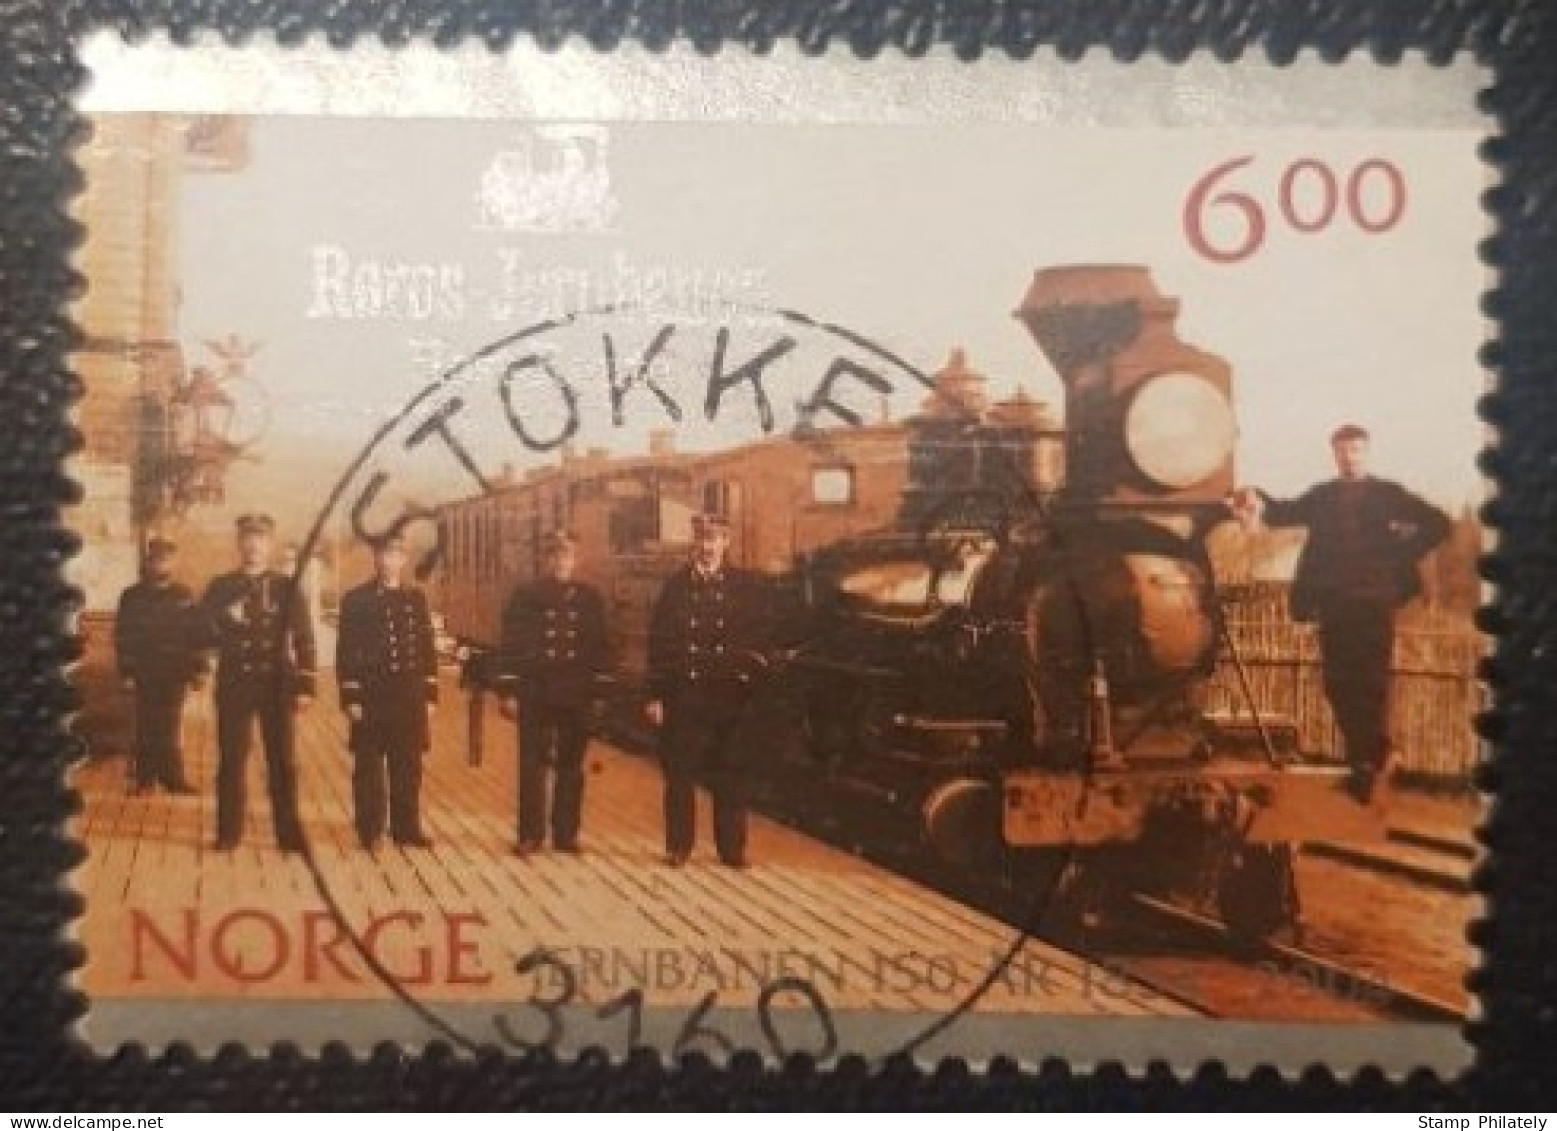 Norway 6Kr Used Postmark Stamp Railway Stokke Cancel - Gebraucht